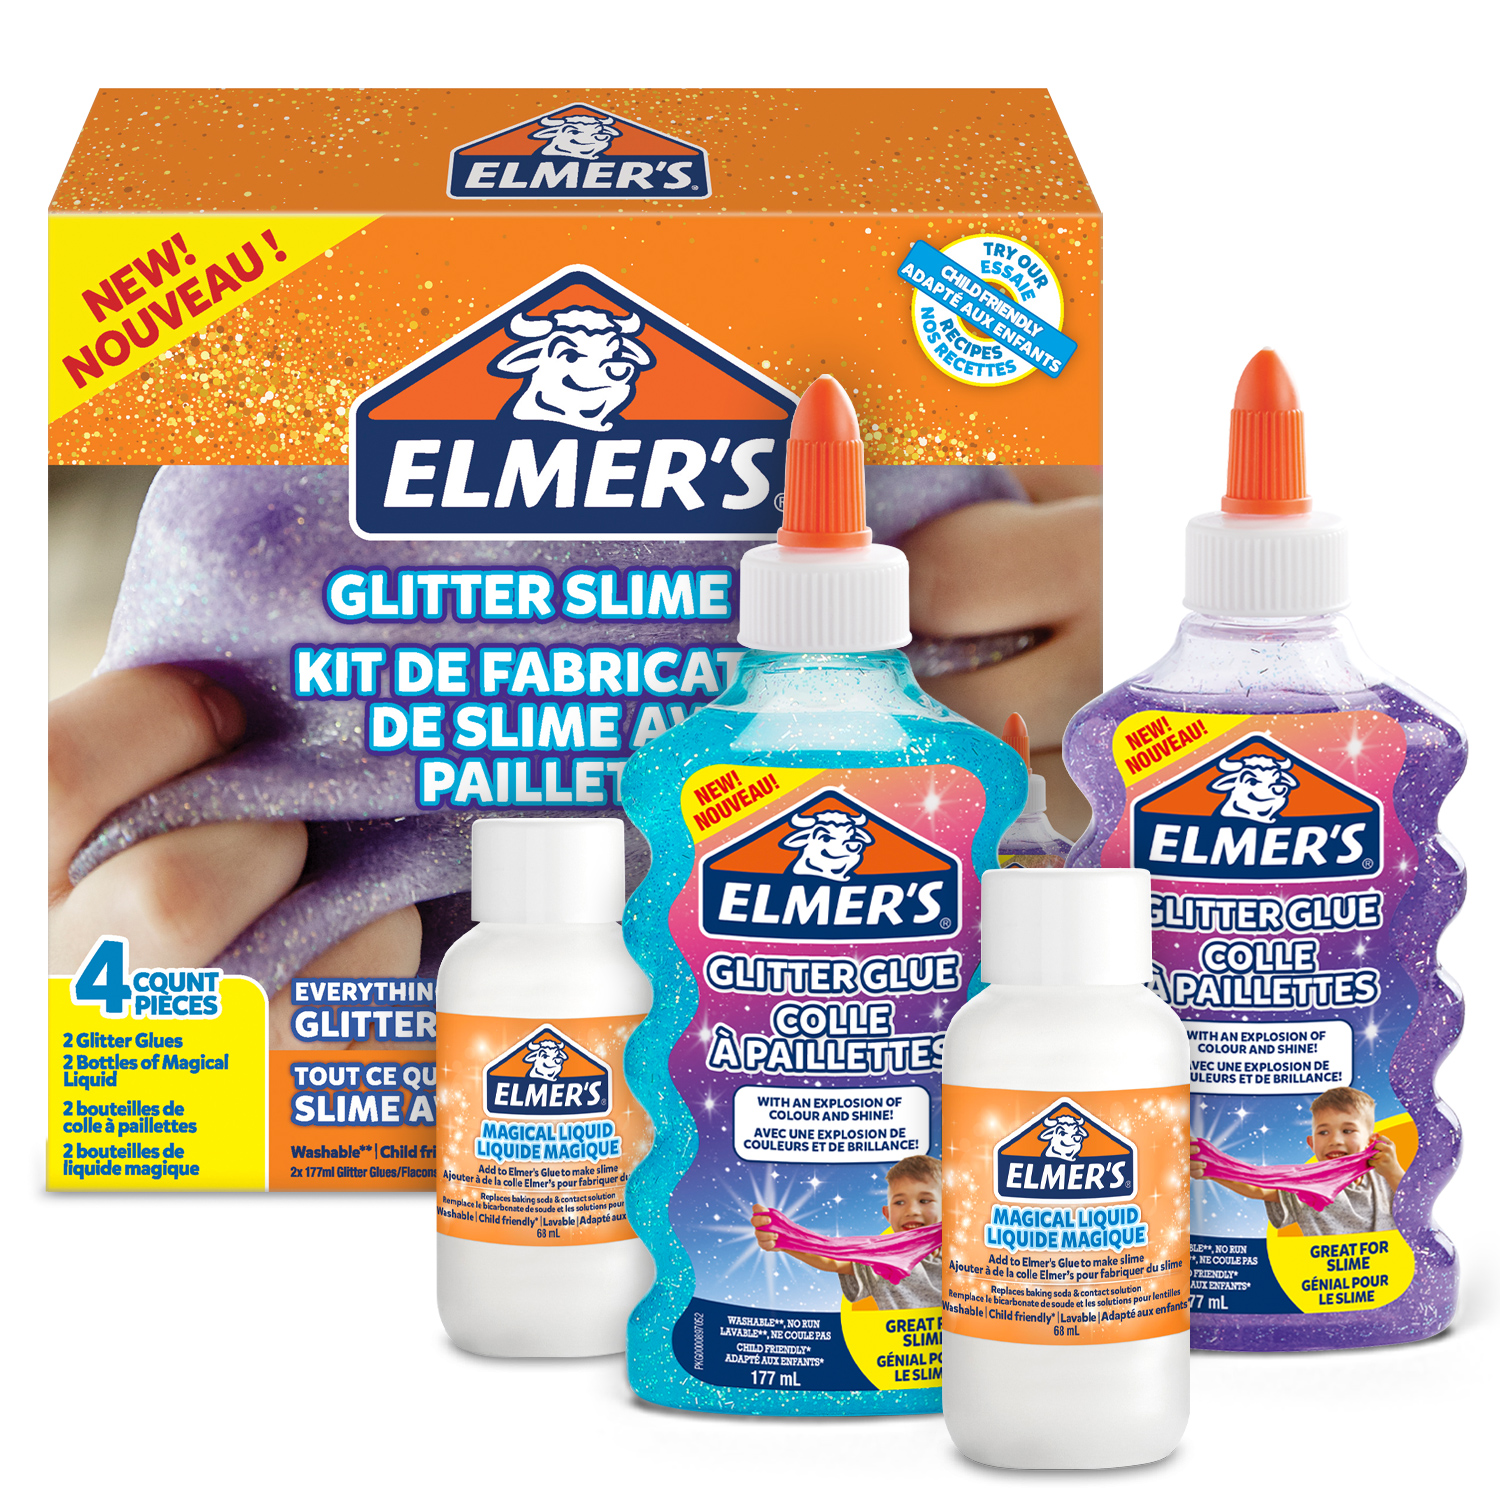 Elmer's colle liquide transparente lavable et adaptée aux enfants